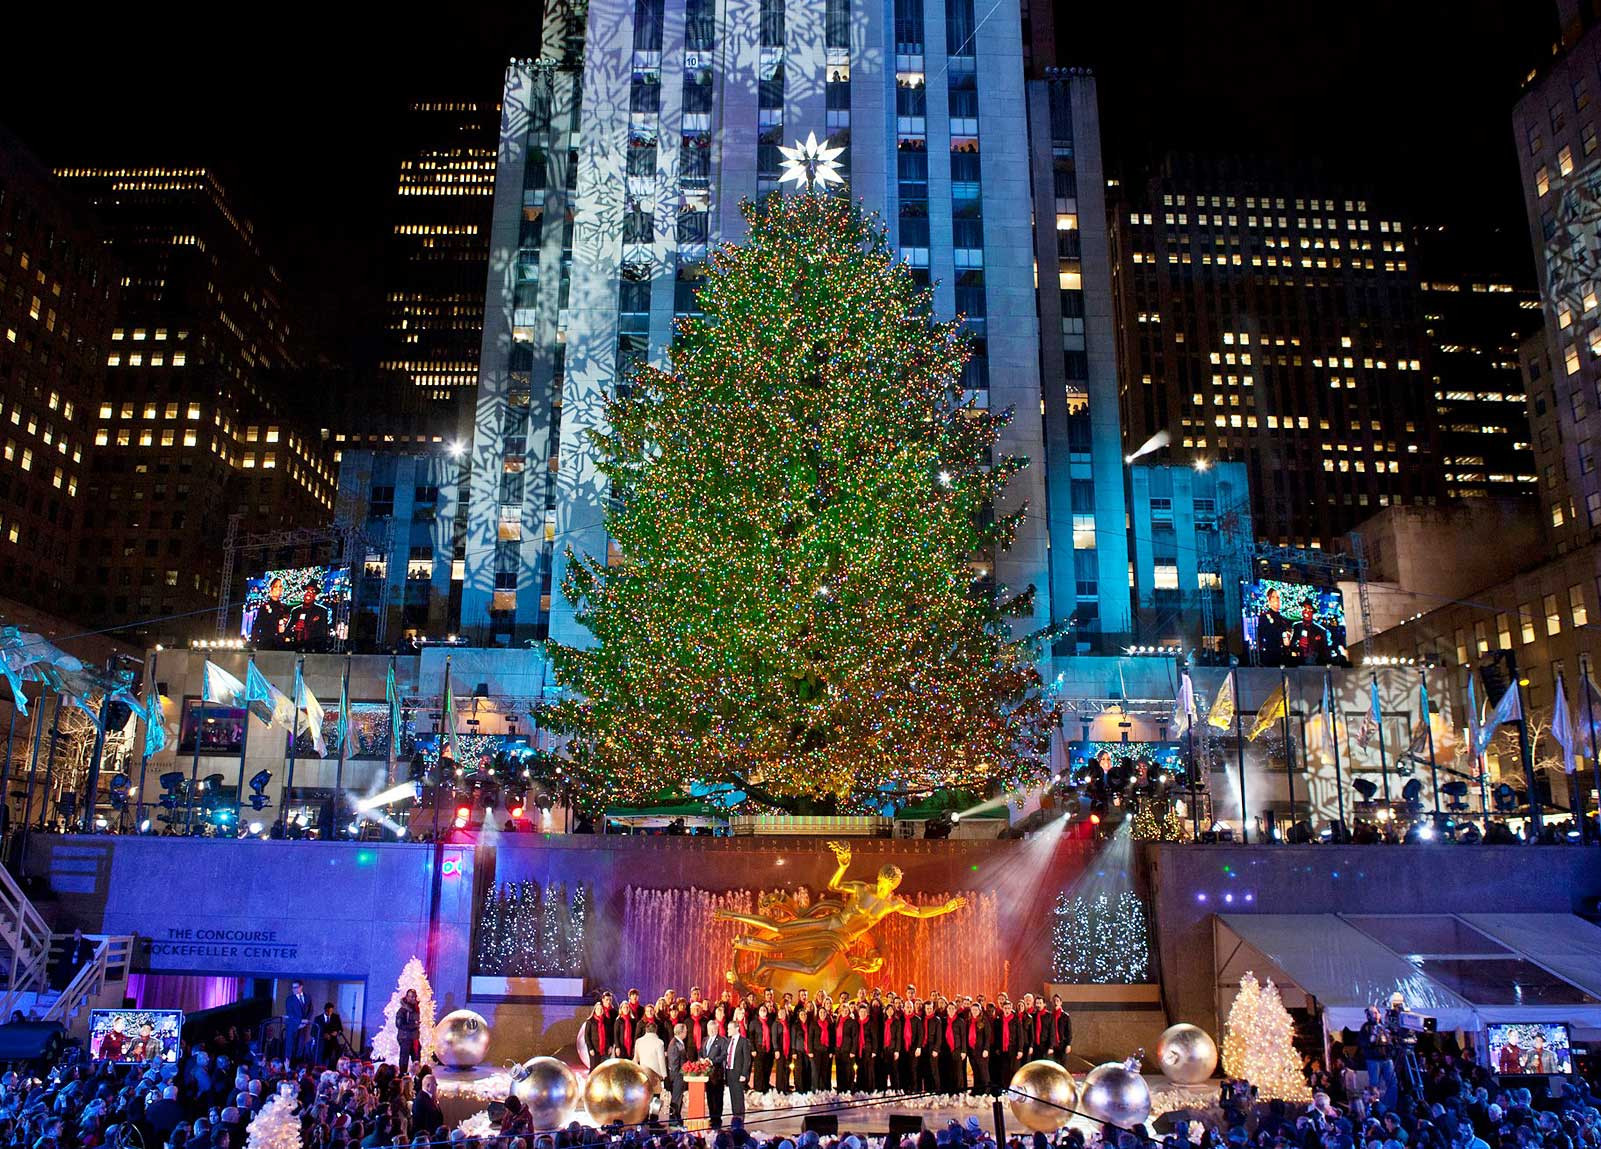 Rockefeller Christmas Tree Lighting 2019 Performers
 Christmas in New York 2019 Rockefeller Center Christmas Tree